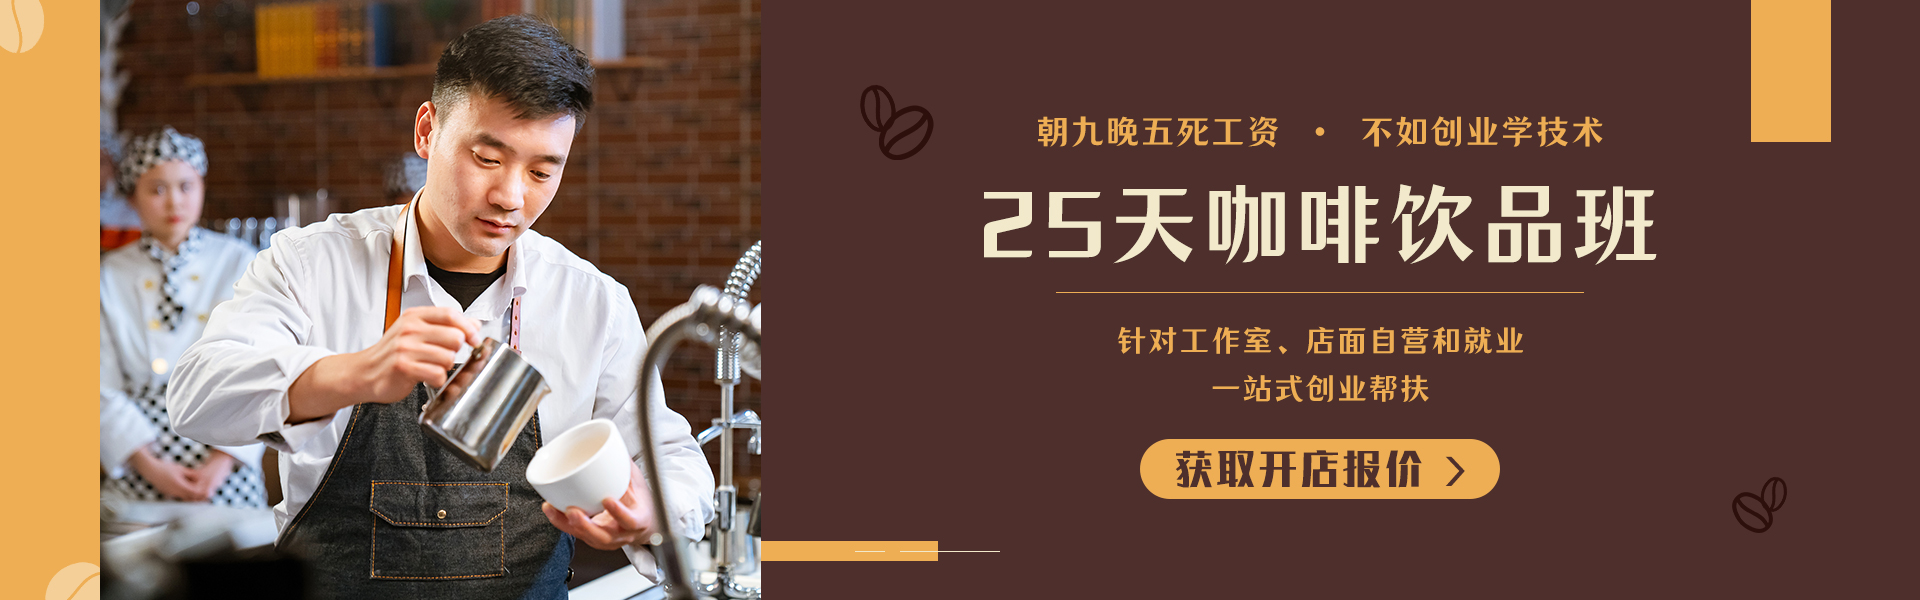 咖啡饮品创就业班_天津新东方烹饪学校